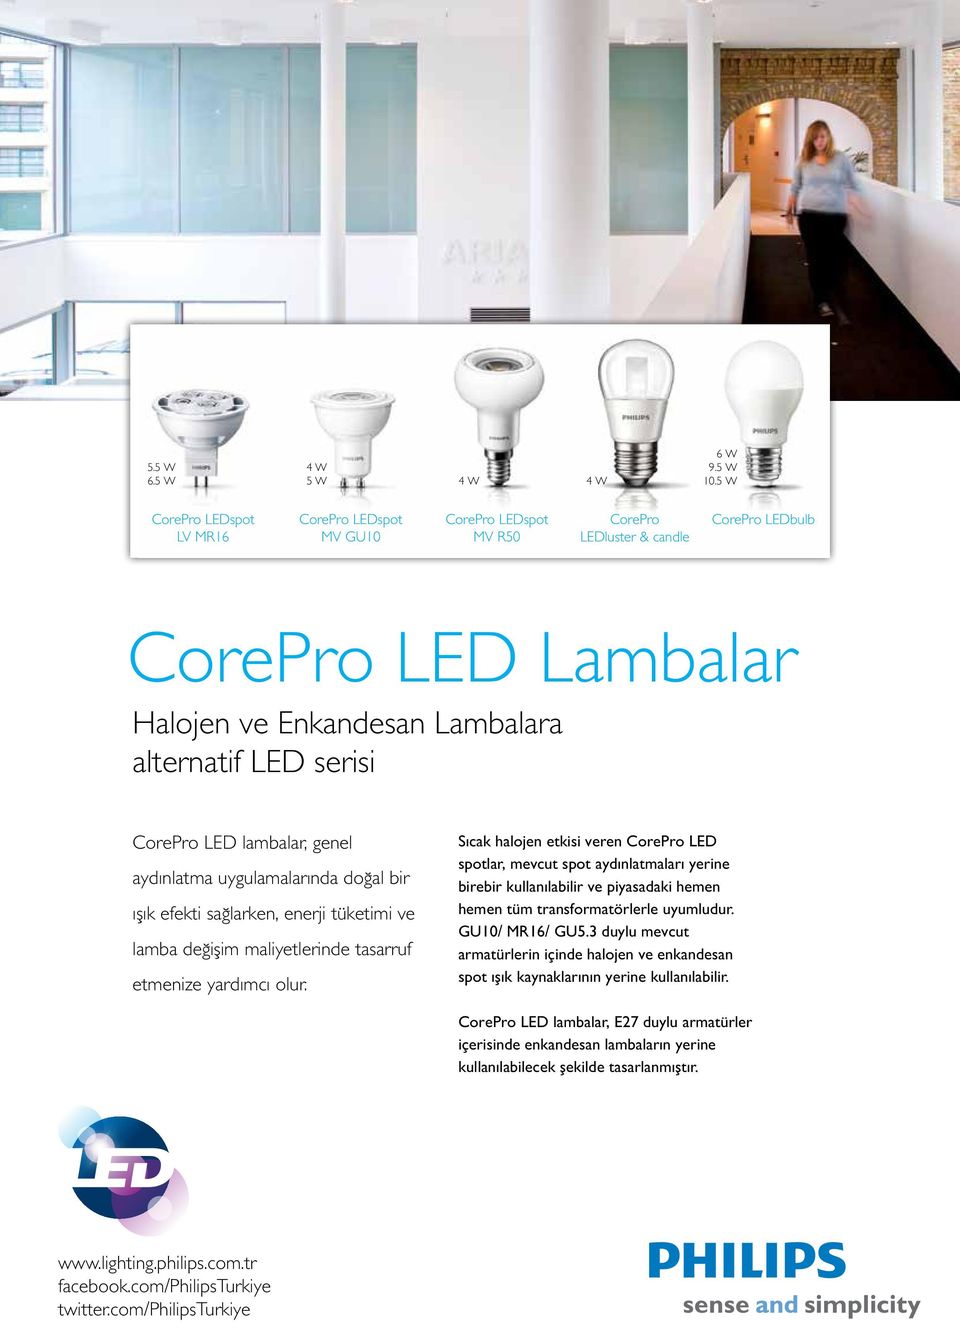 CorePro LED lambalar, genel aydınlatma uygulamalarında doğal bir ışık efekti sağlarken, enerji tüketimi ve lamba değişim maliyetlerinde tasarruf etmenize yardımcı olur.